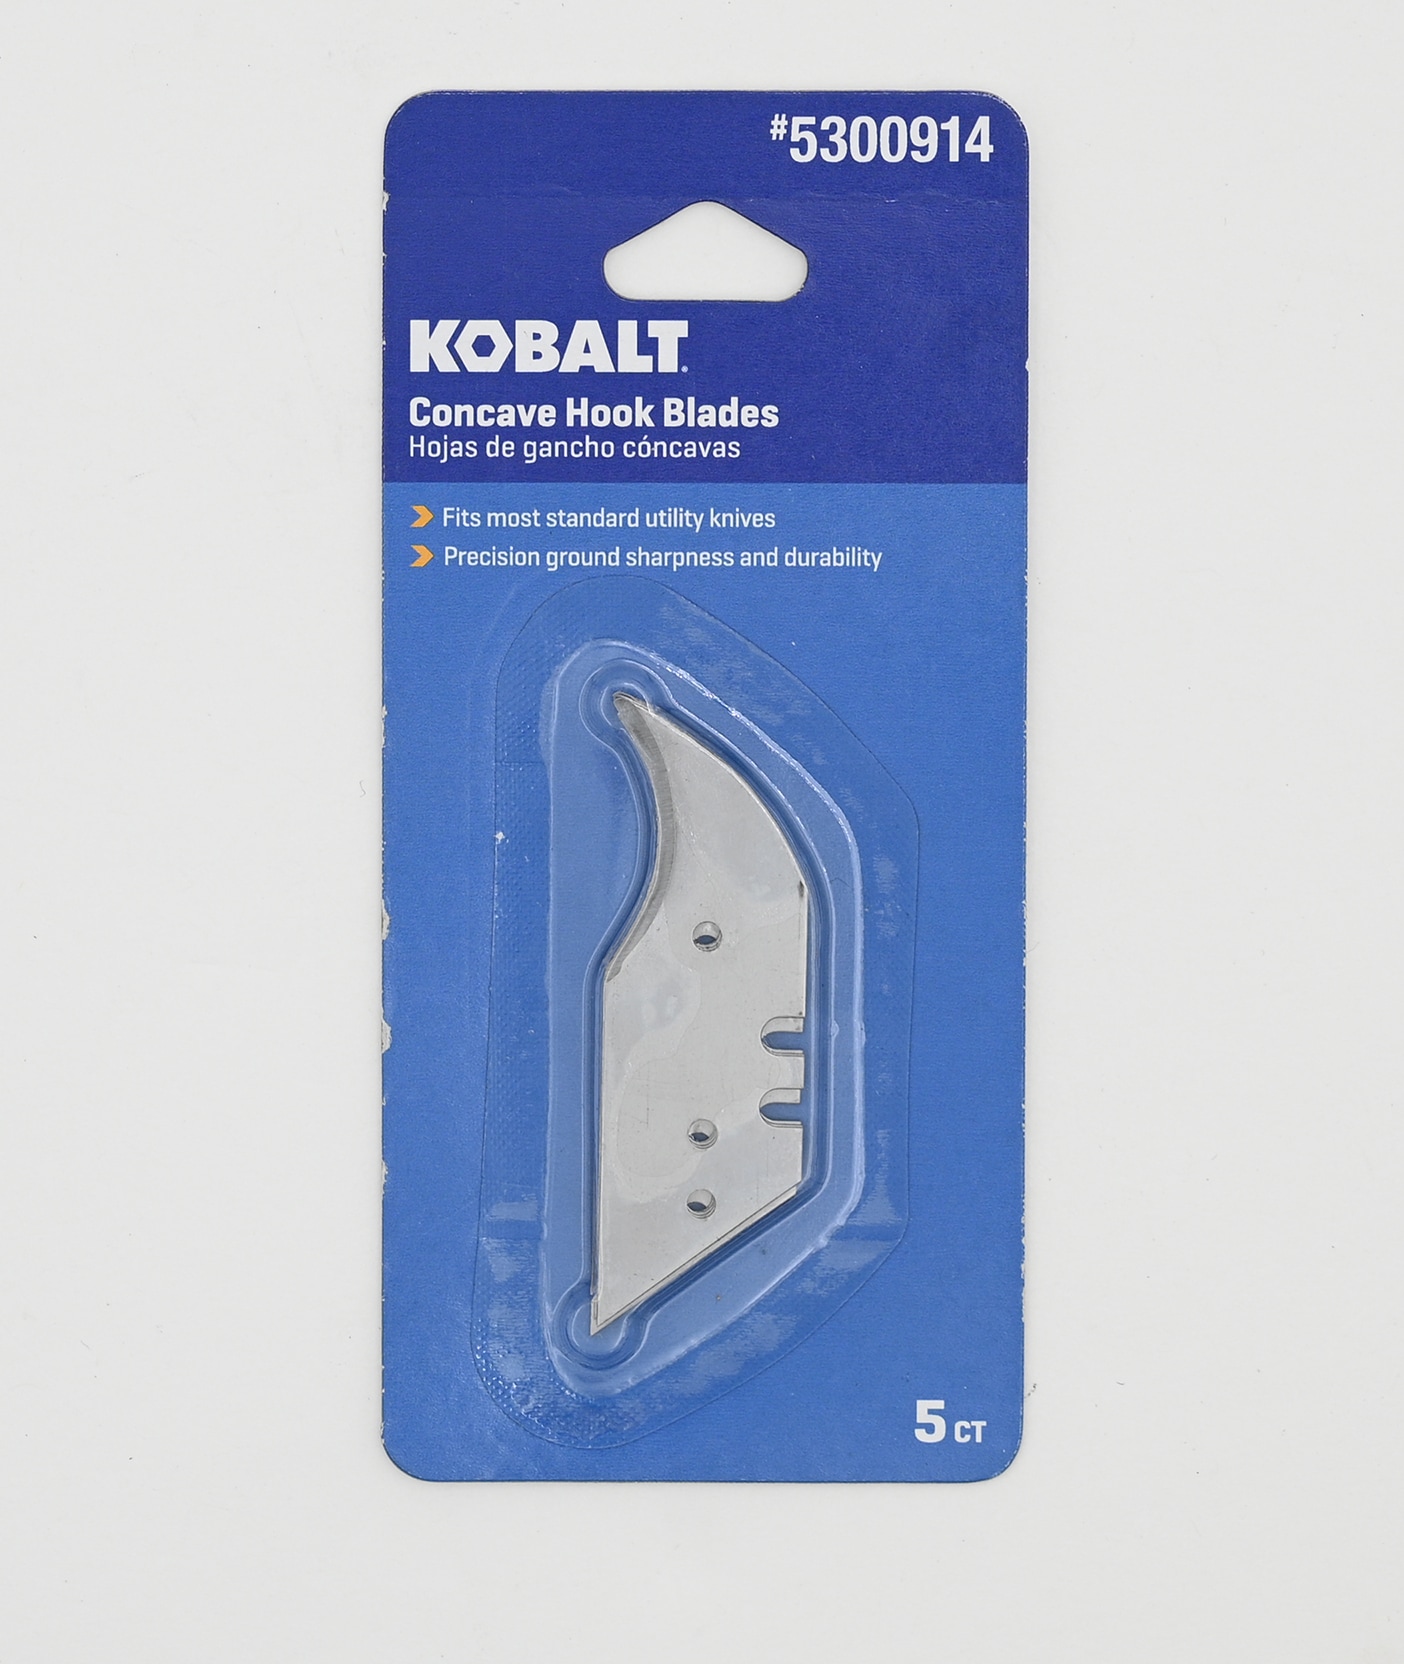 Kobalt Carbon Steel Hook Utility Razor Blade(5-Pack) in the